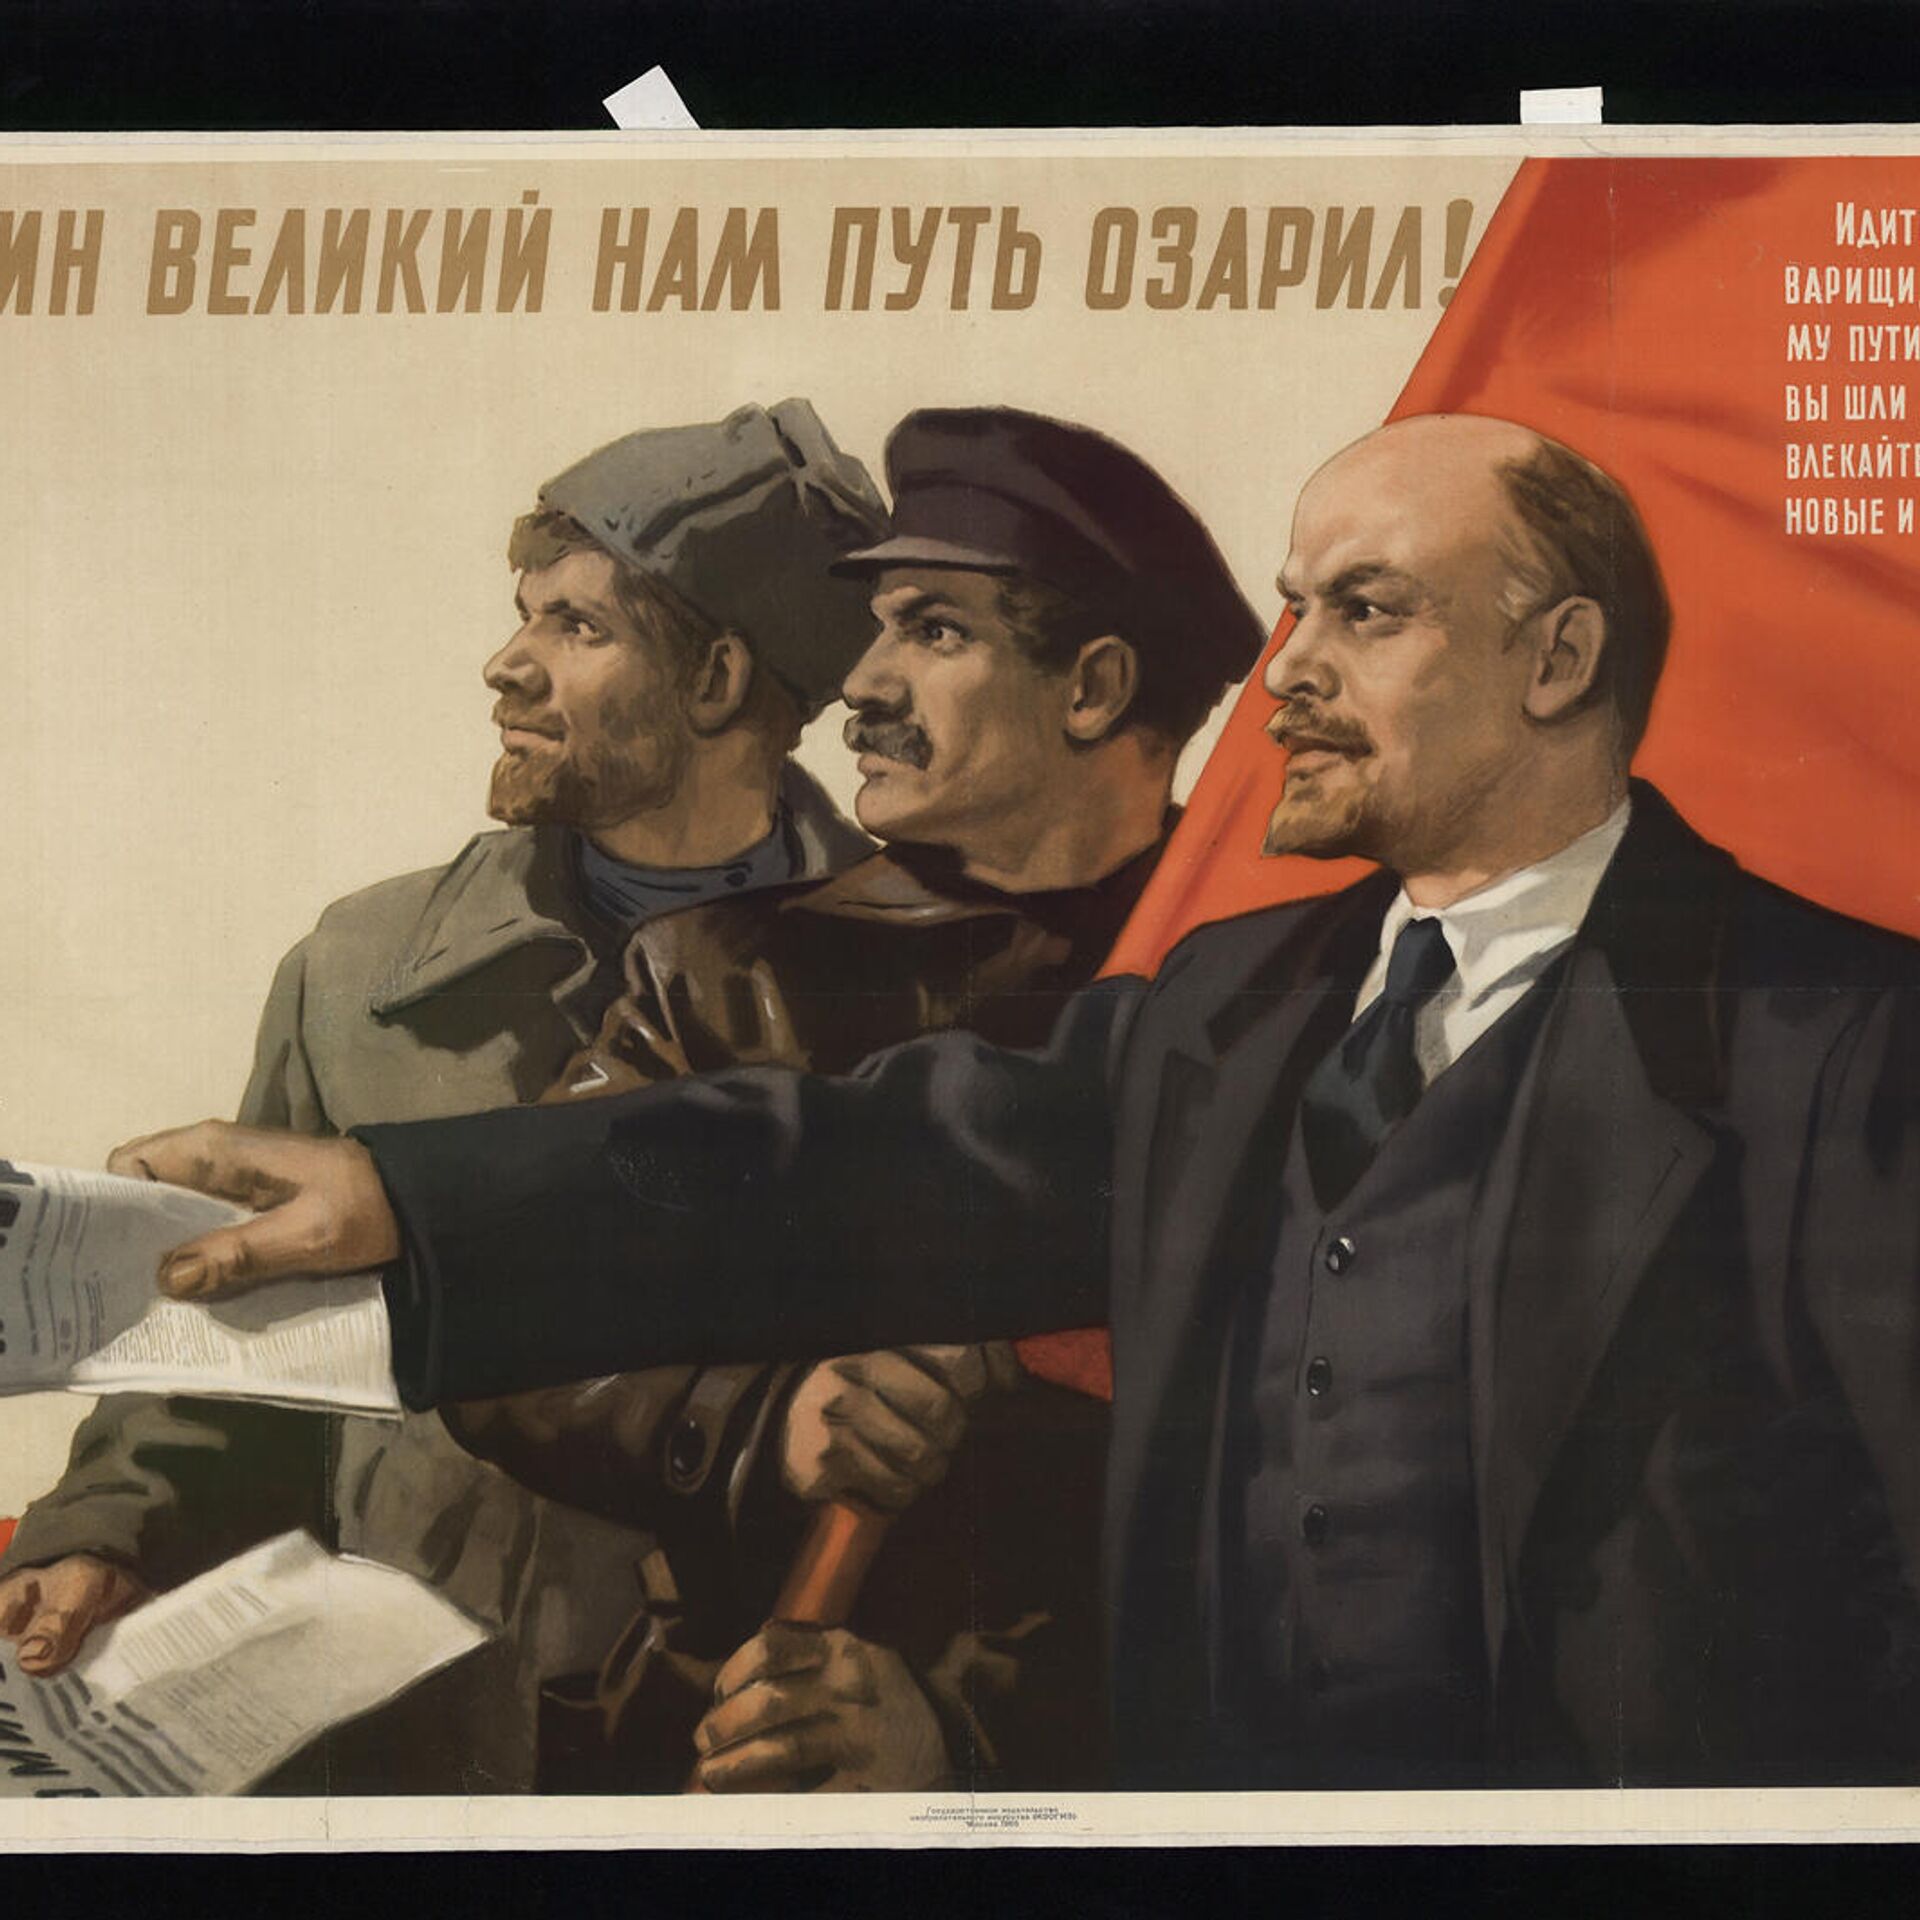 Ленин Великий нам путь озарил плакат